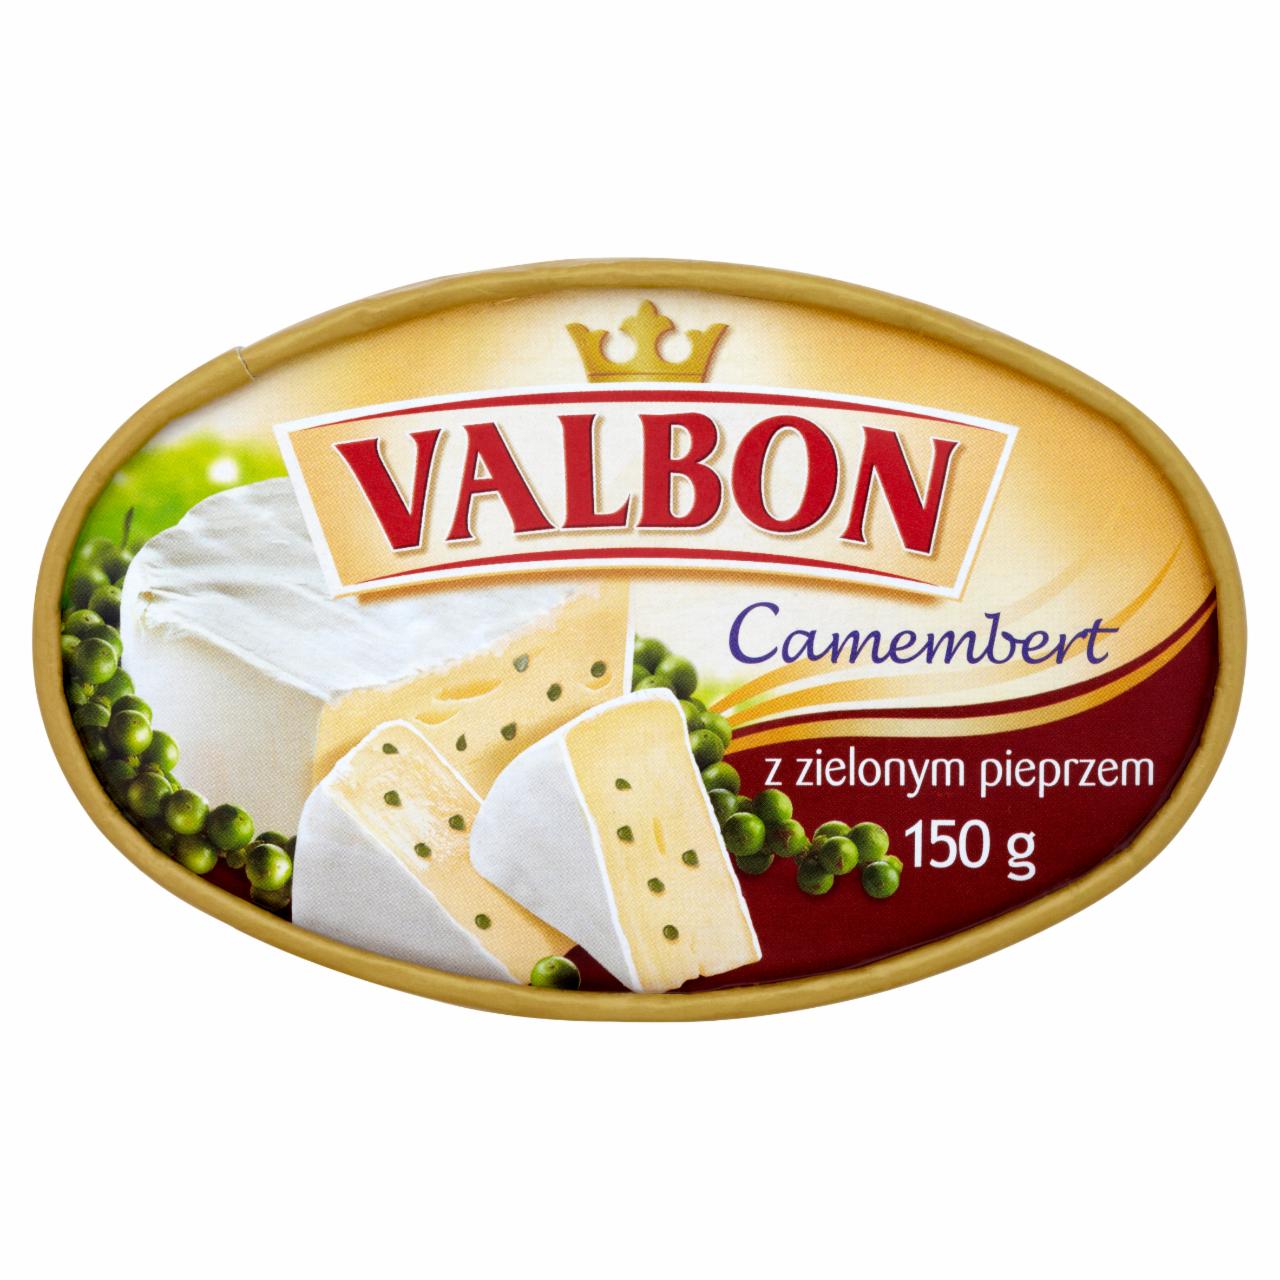 Zdjęcia - Valbon Camembert z zielonym pieprzem 150 g